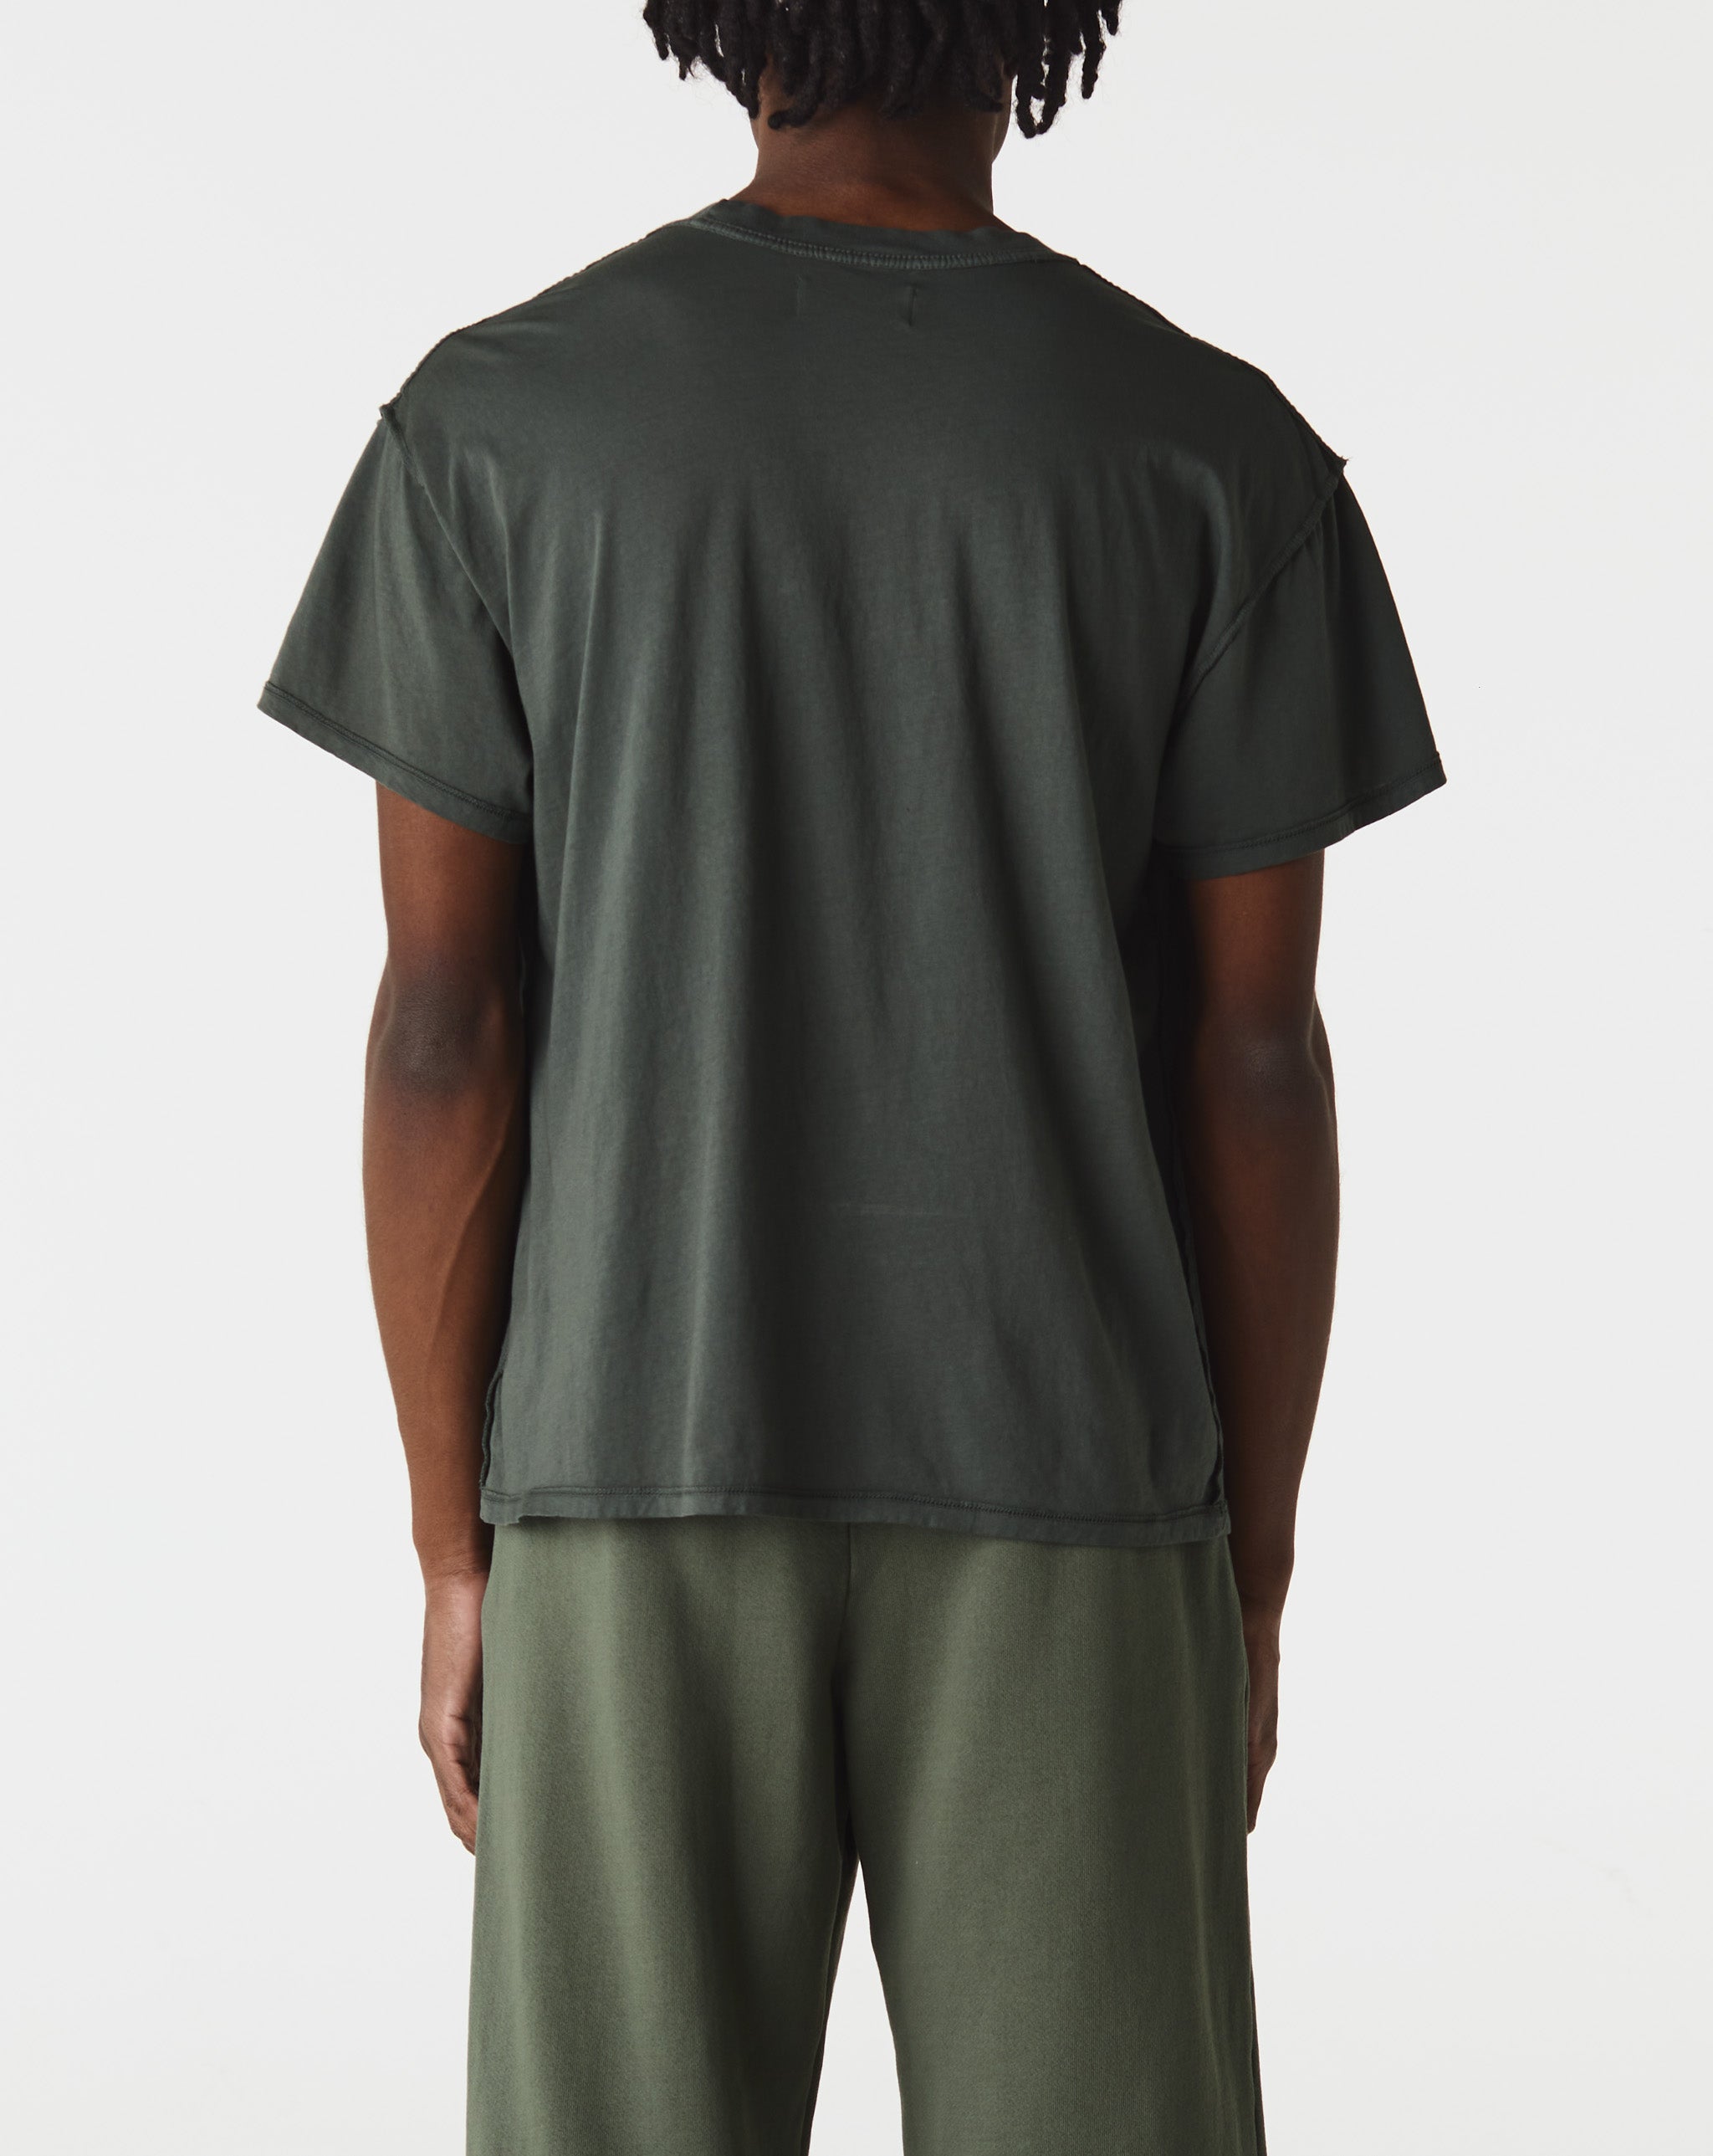 Les Tien Inside Out T-Shirt  - Cheap Cerbe Jordan outlet